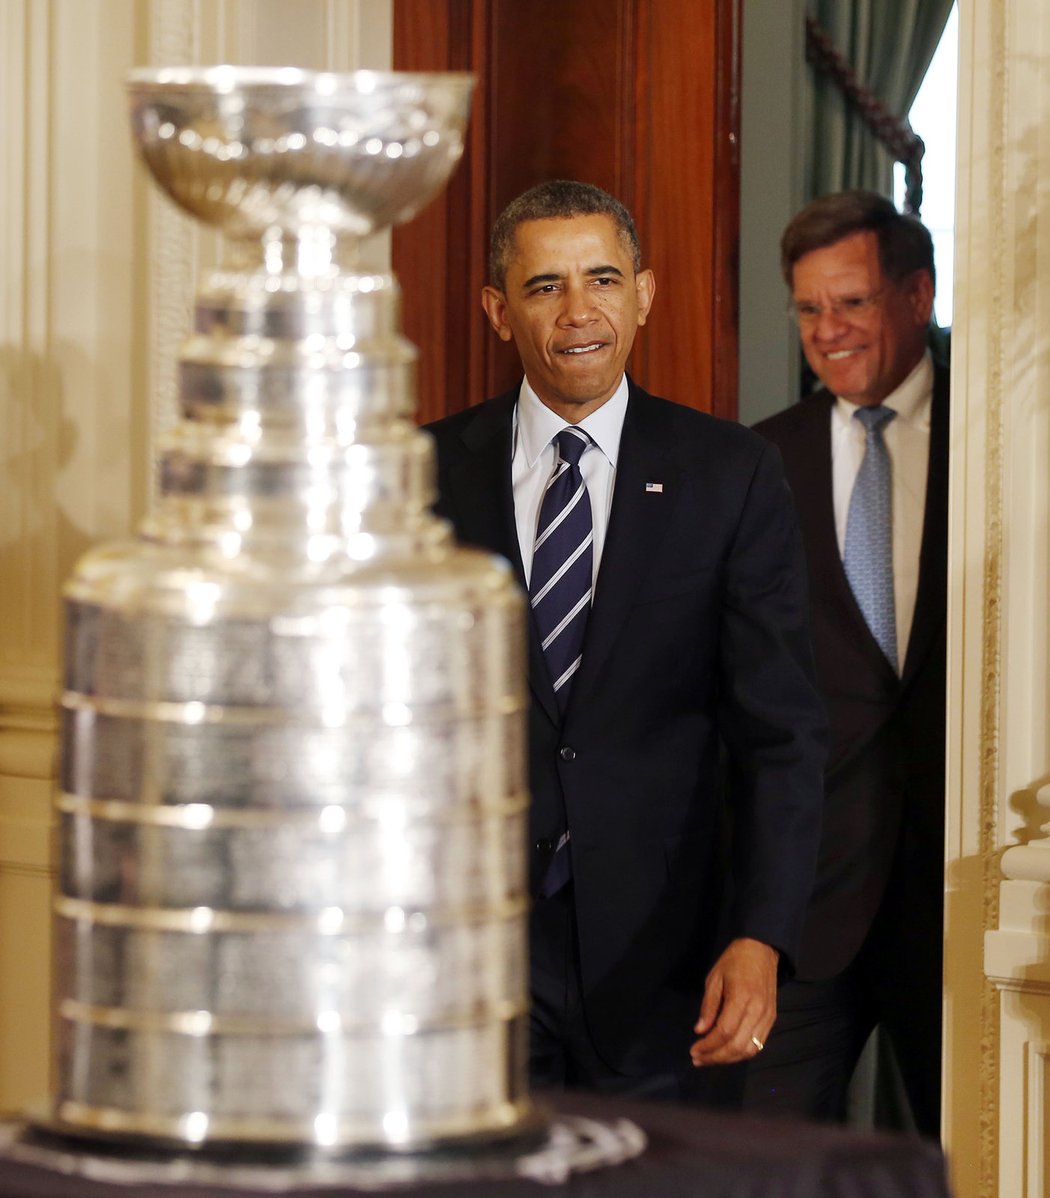 Čtyřiačtyřicátý prezident Spojených států amerických Barack Obama vchází, ceremoniál může pomalu začít. Obama přijal hokejisty Blackhawks za poslední tři roky už podruhé.